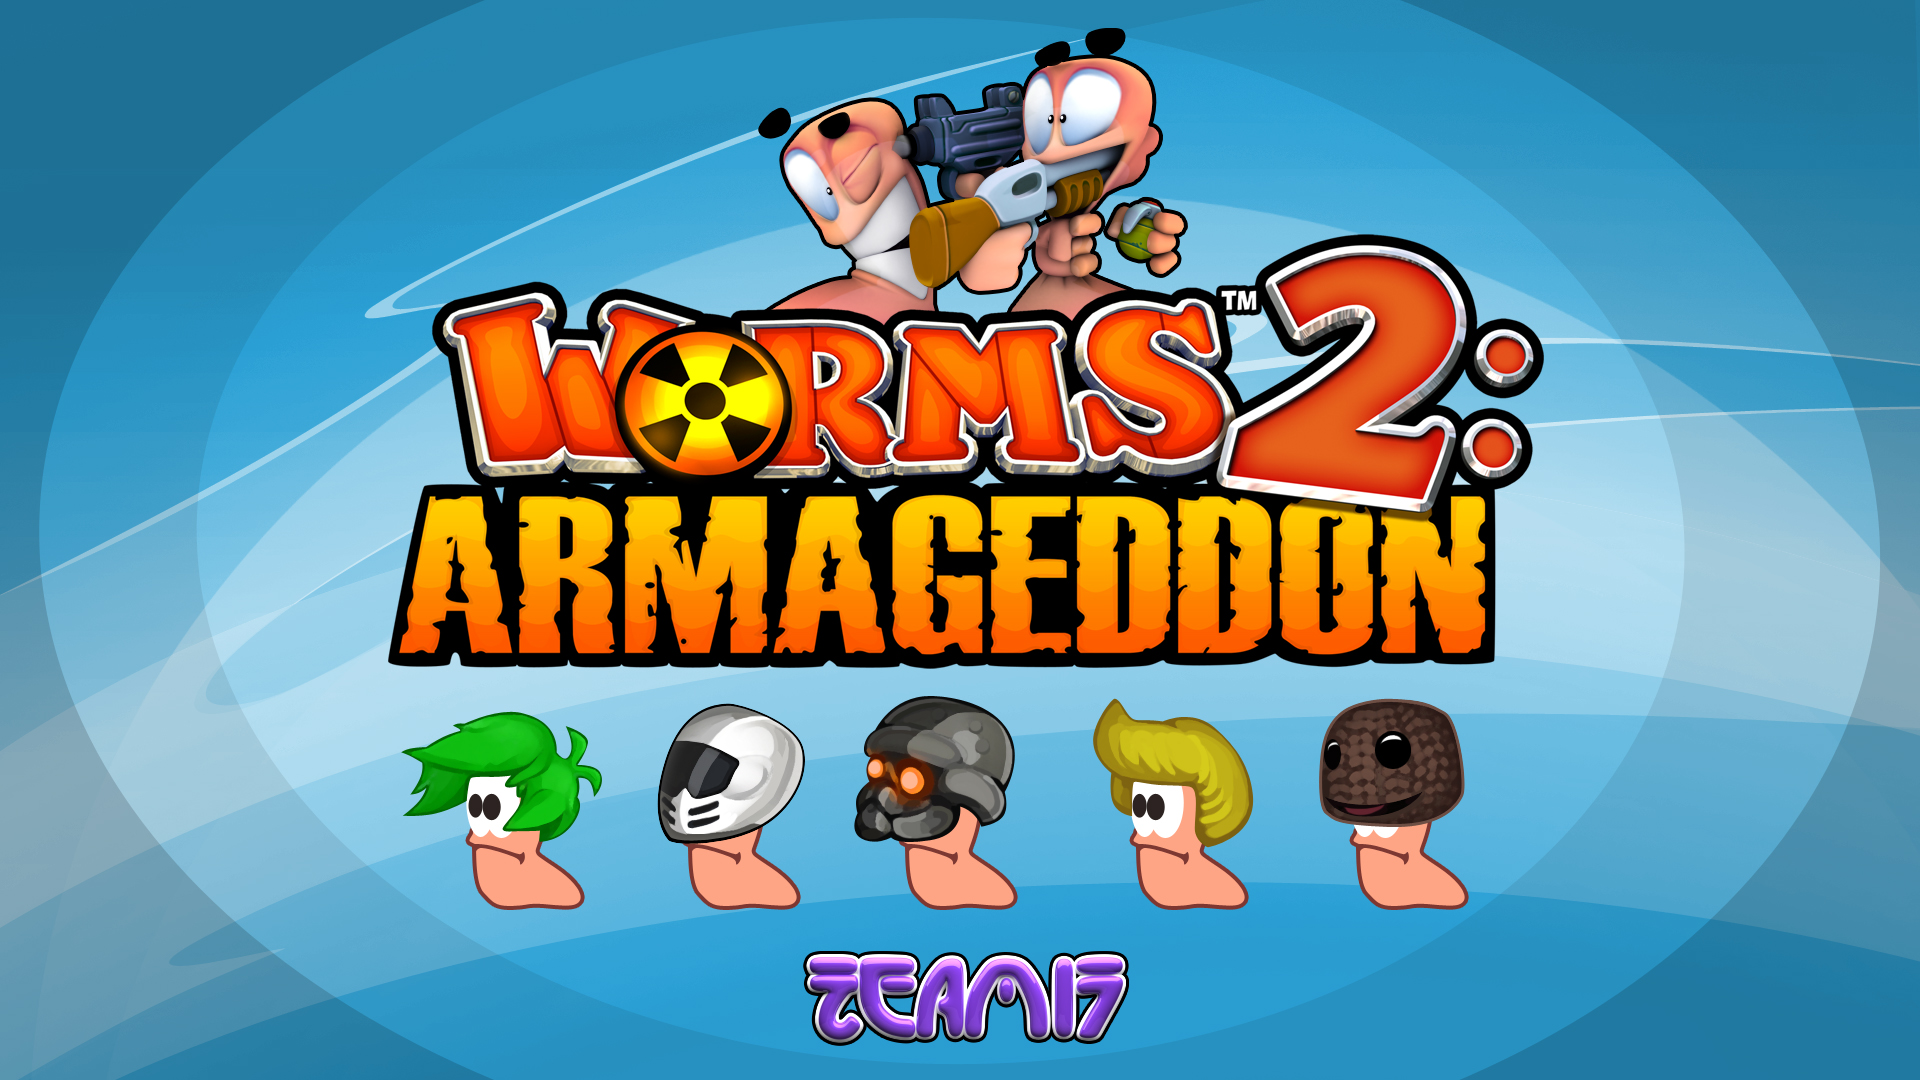 Worms Armageddon Free Download Pc Game